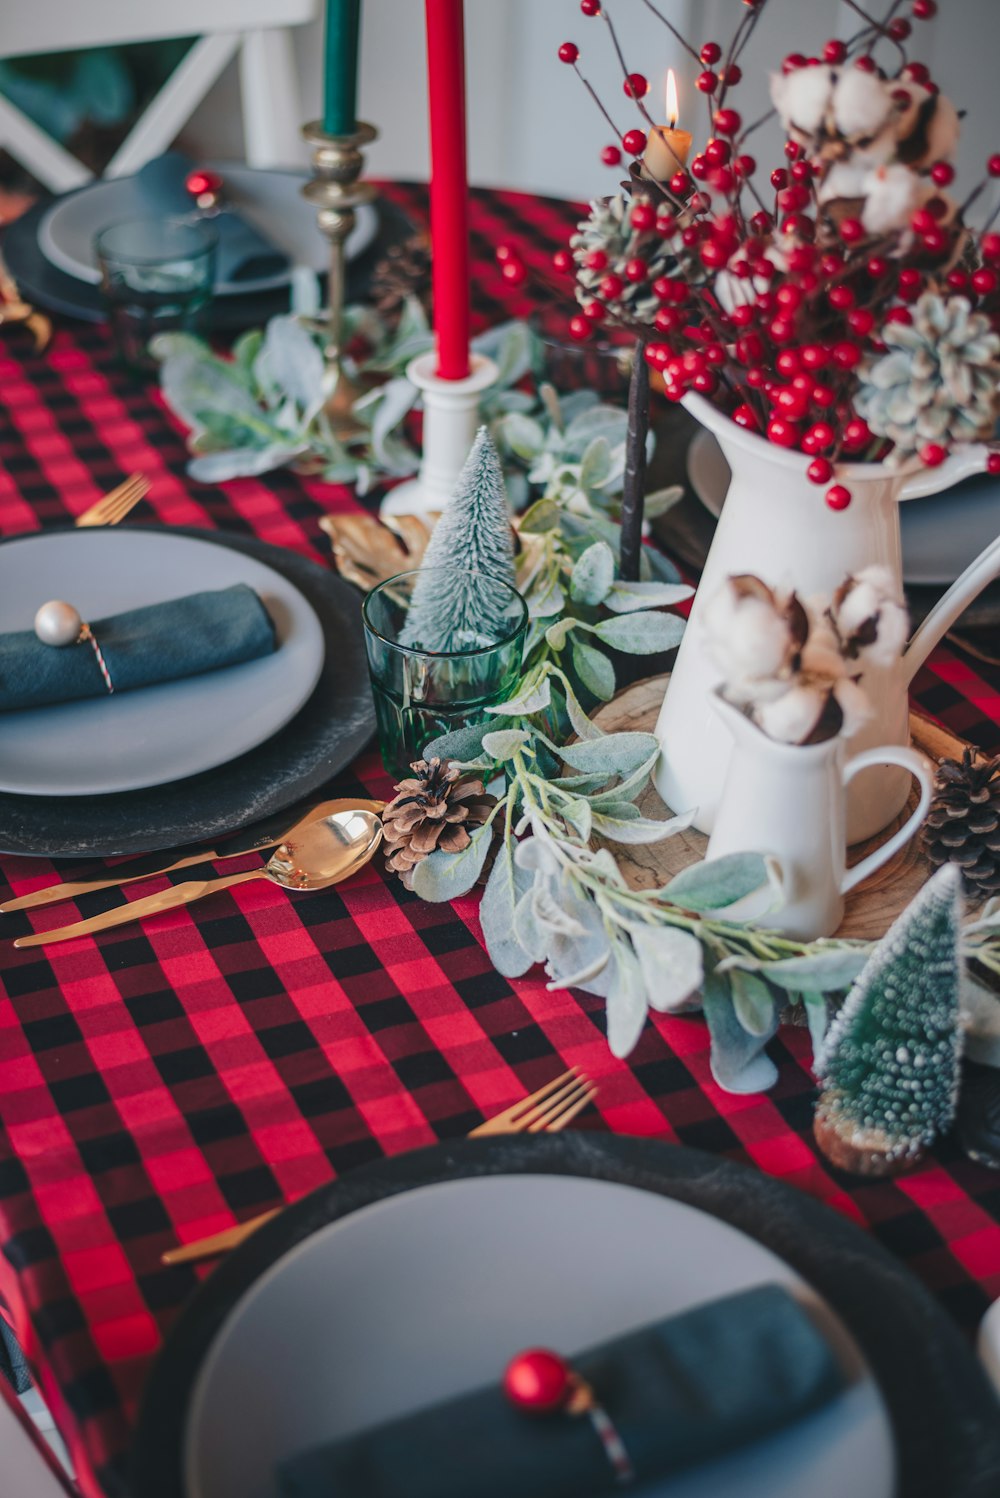 赤と白の市松模様のテーブルクロスに白いセラミックキャンドルホルダー